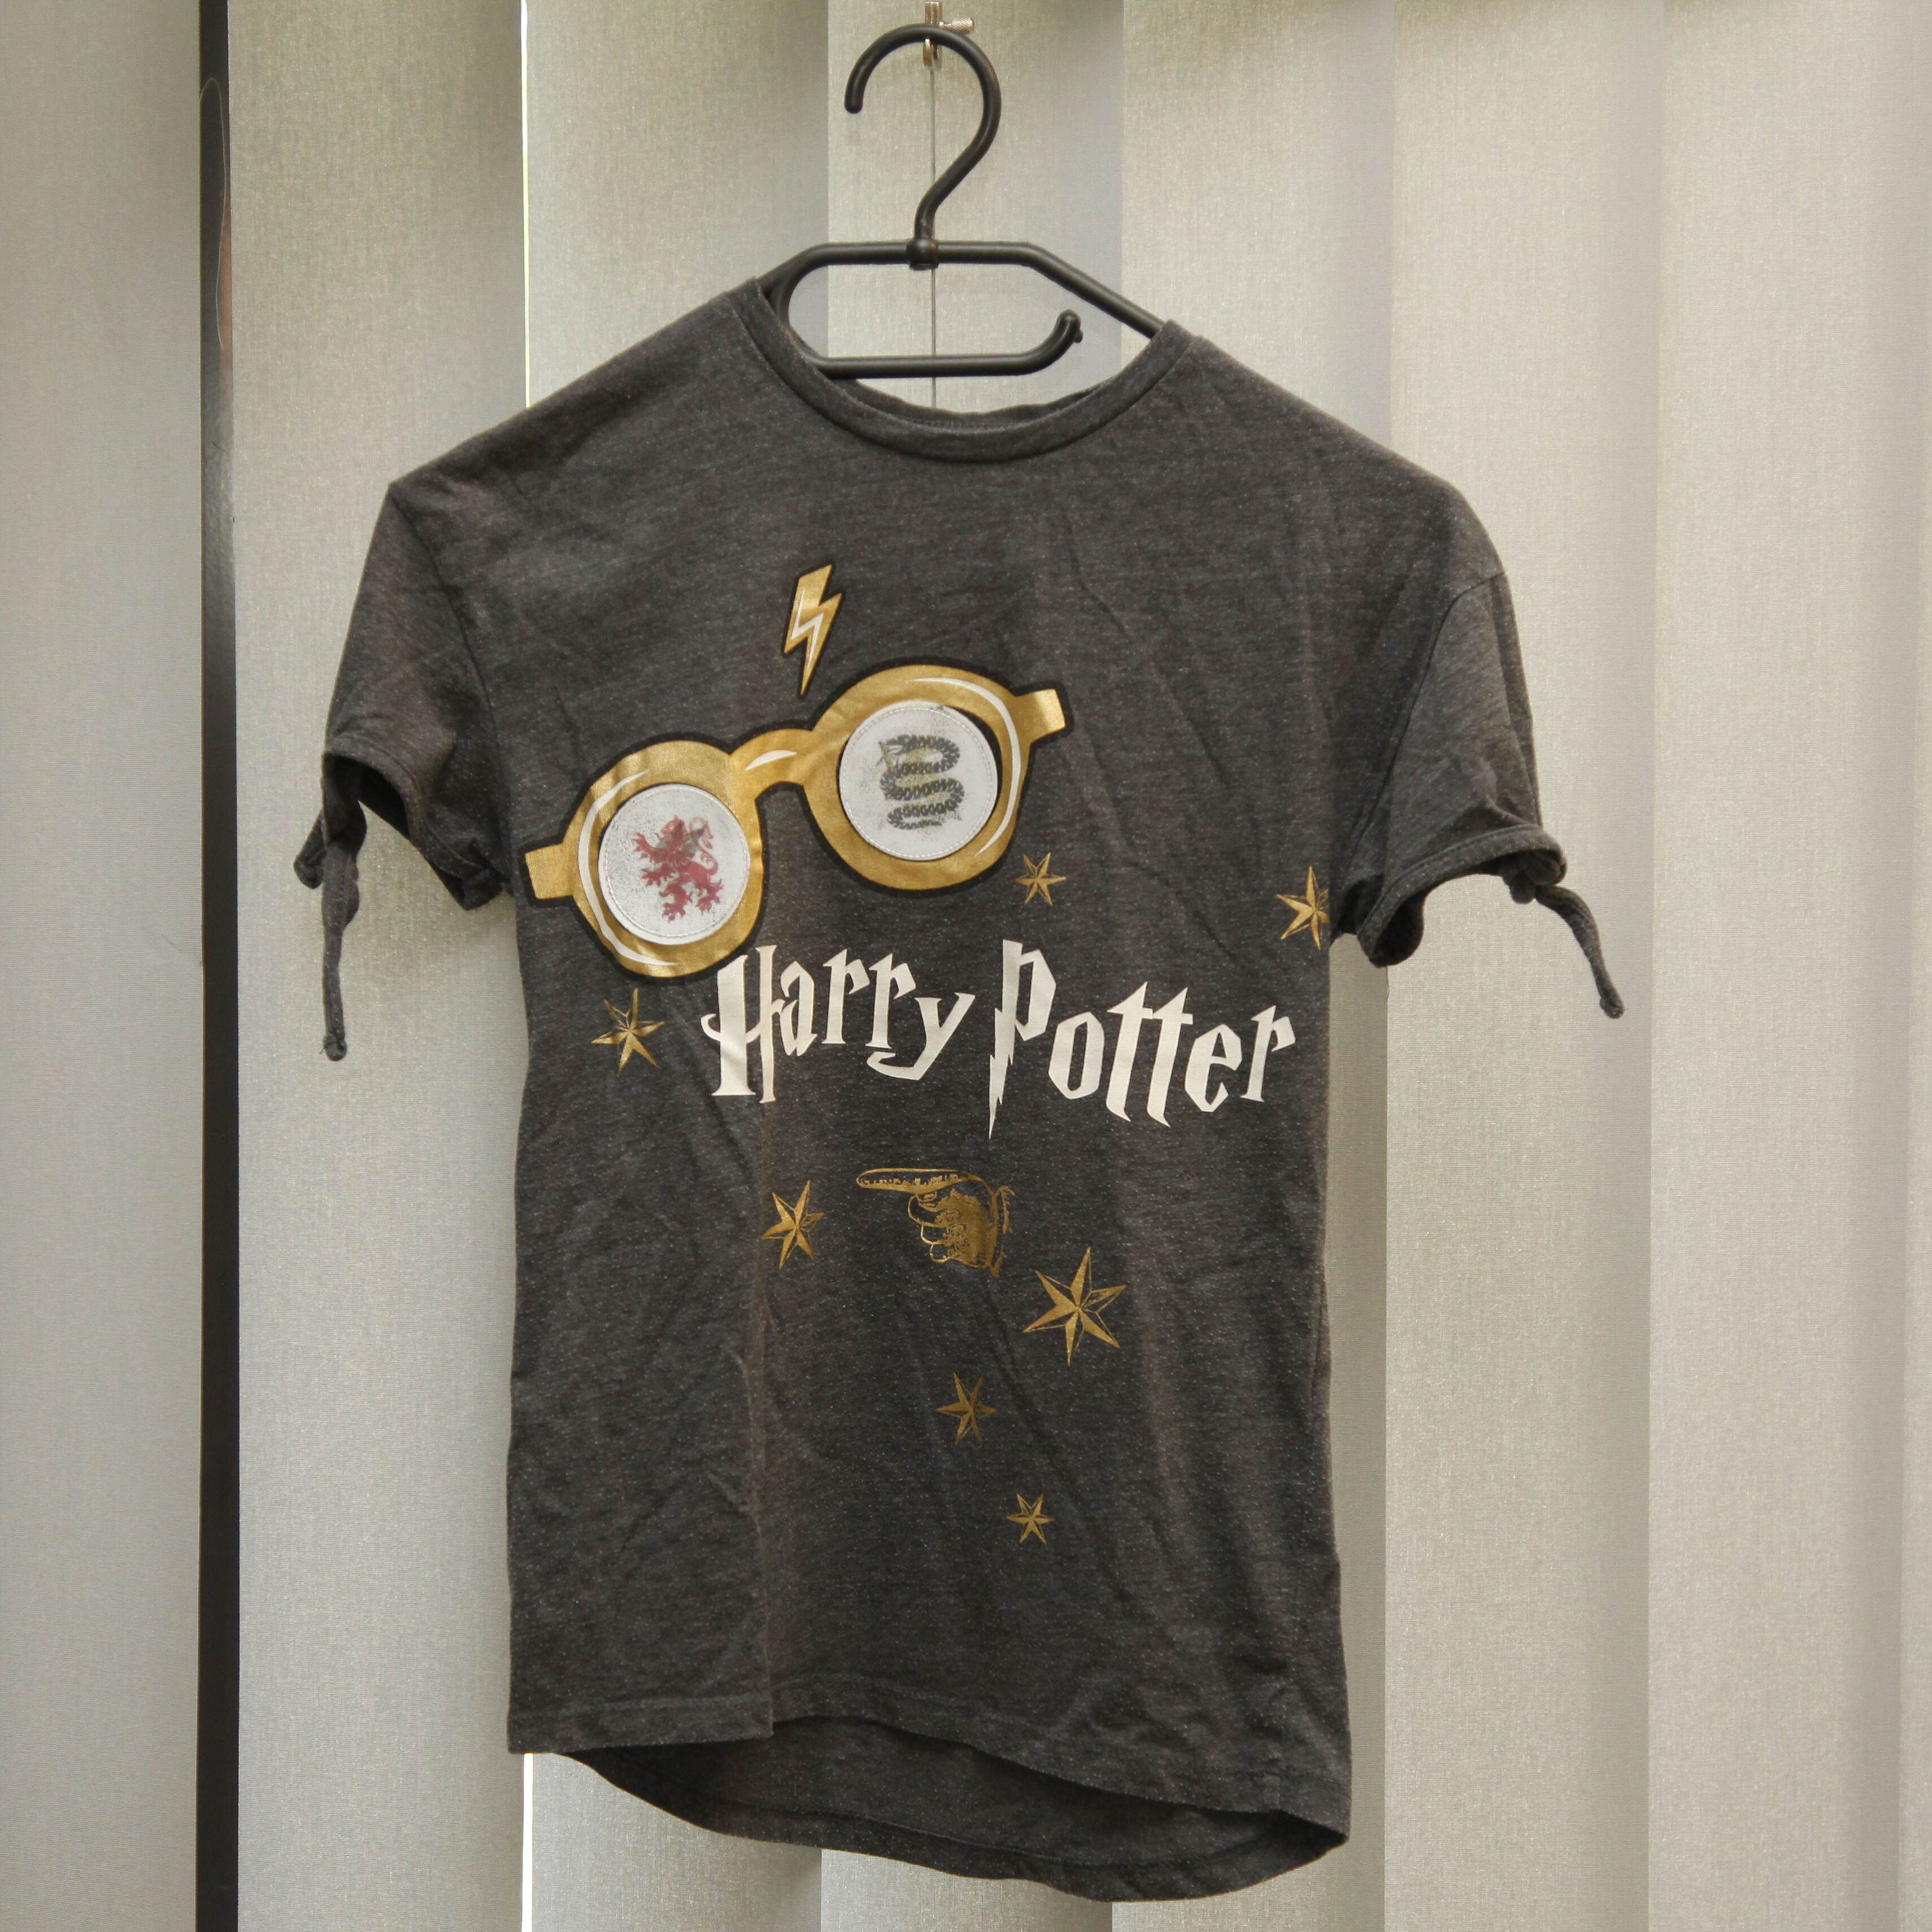 zdjęcie przedstawia Koszulkę znapisem Harry Potter